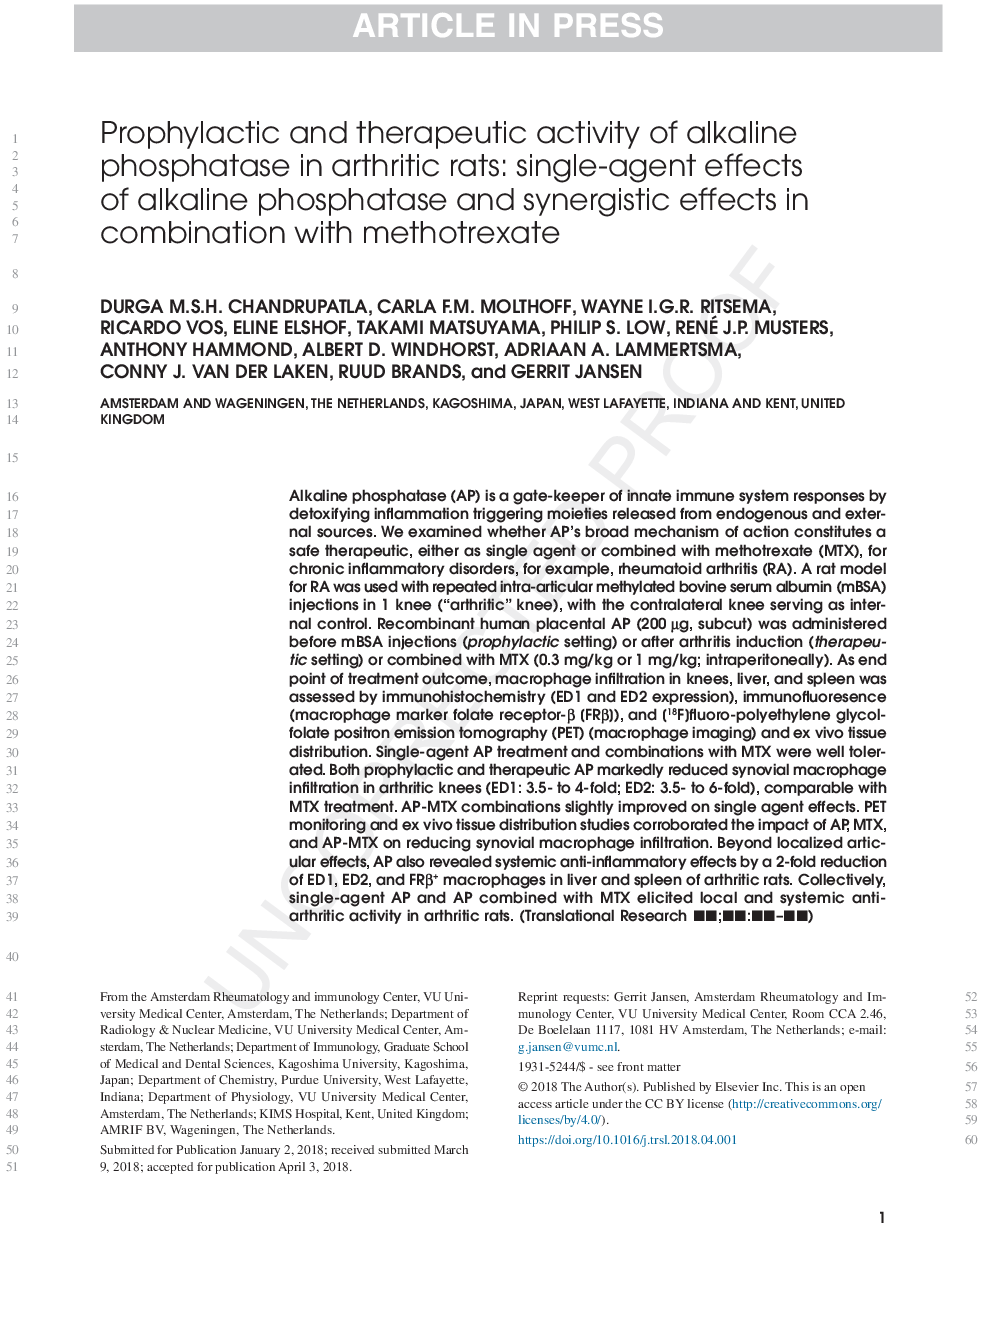 فعالیت پیشگیرانه و درمانی آلکالن فسفاتاز در موش های صحرایی: اثرات تکثیر آلکالین فسفاتاز و اثرات سینرژیک در ترکیب با متوترکسات